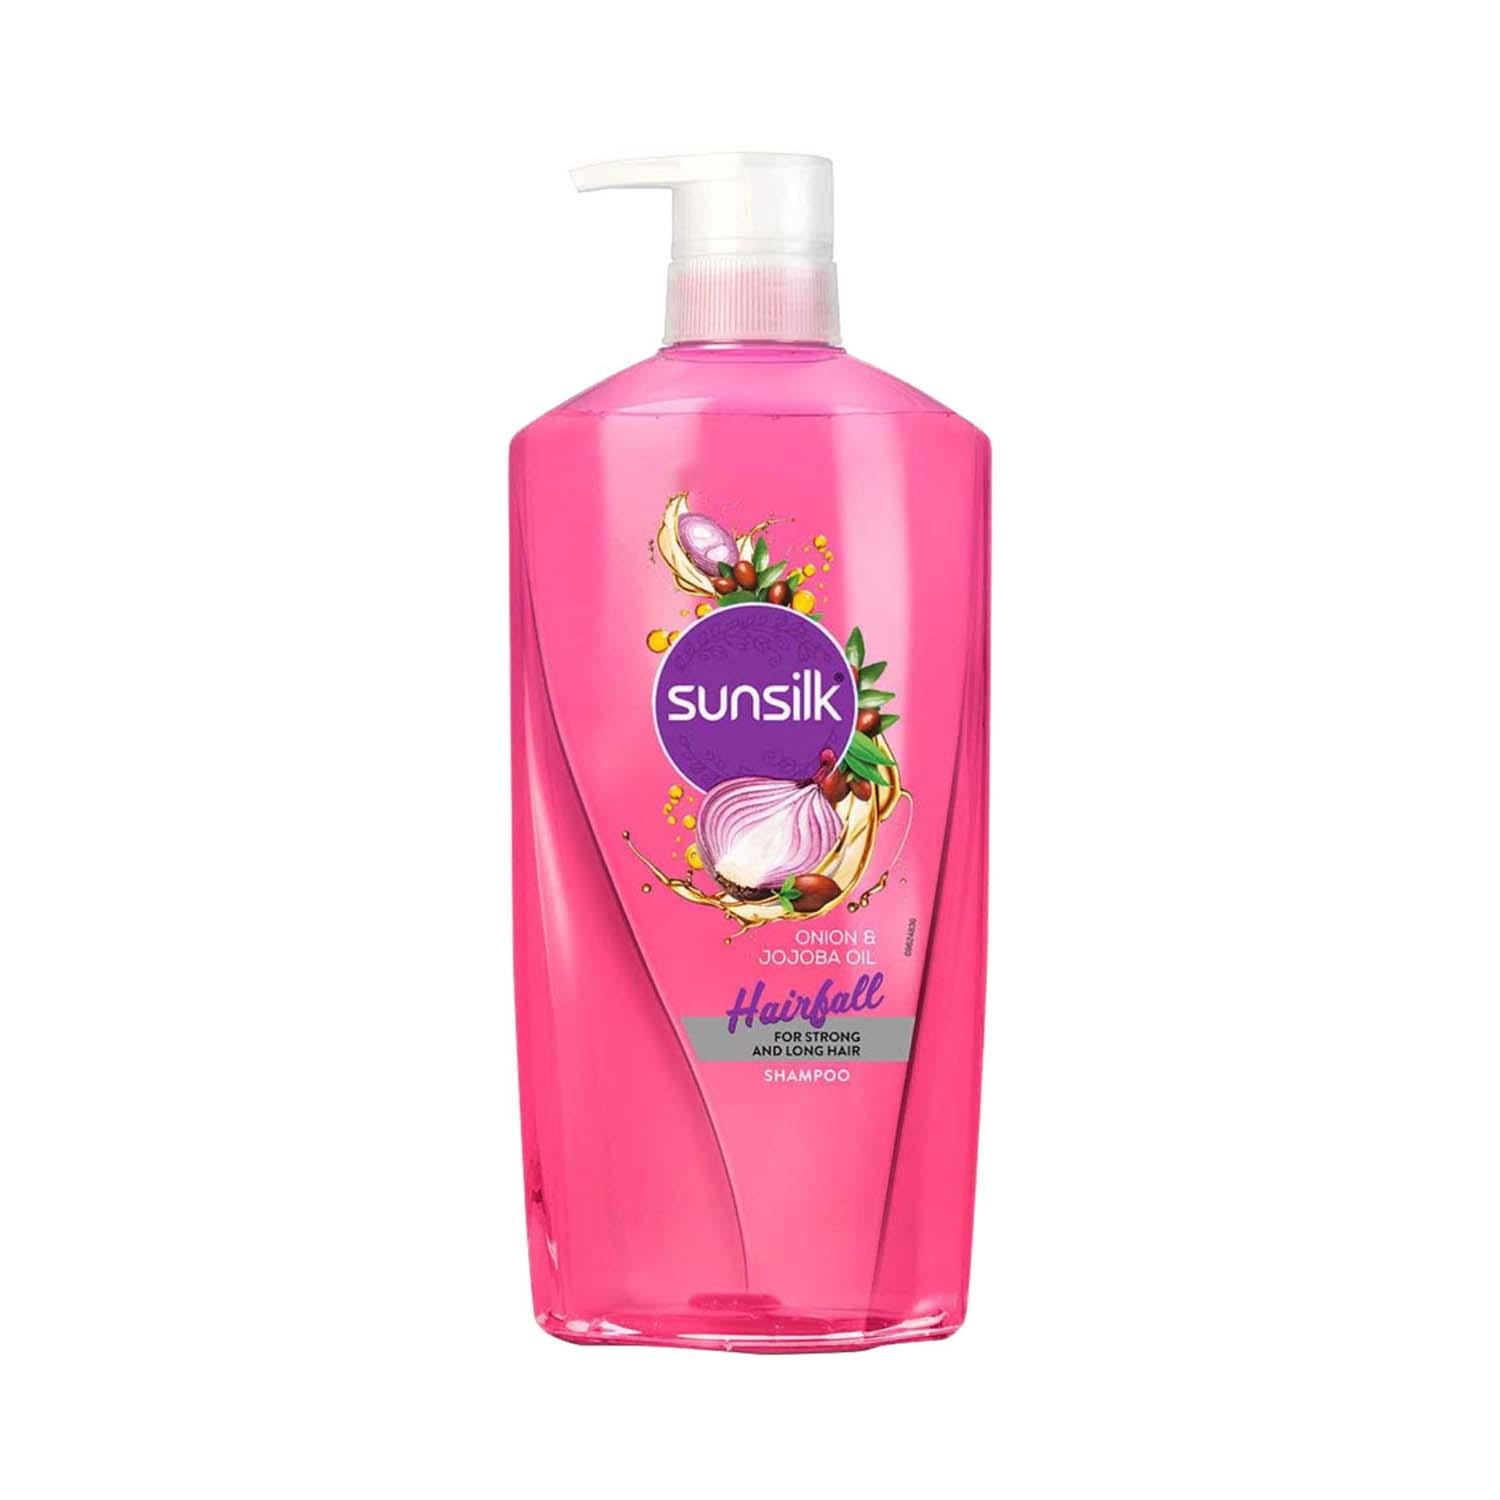 Sunsilk | Sunsilk Onion & Jojoba Oil Hairfall Shampoo (700 ml)